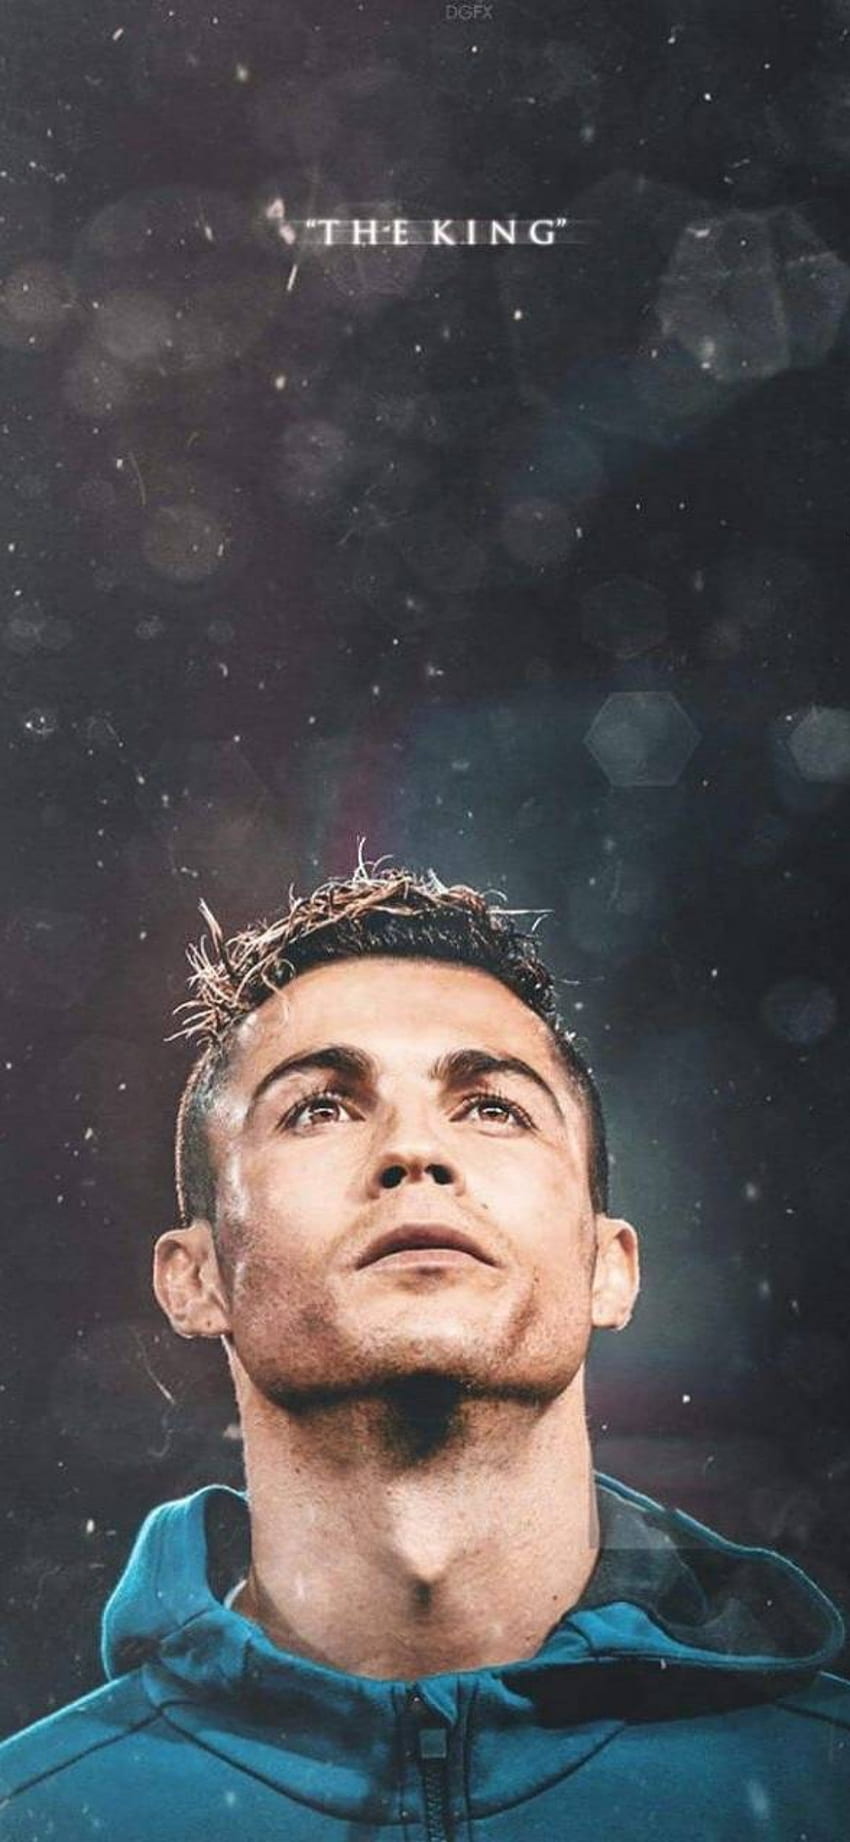 Những hình nền iPhone mang đậm chất cá nhân hóa với hình ảnh đẹp lung linh của Cristiano Ronaldo sẽ khiến người xem thích thú và cảm động.